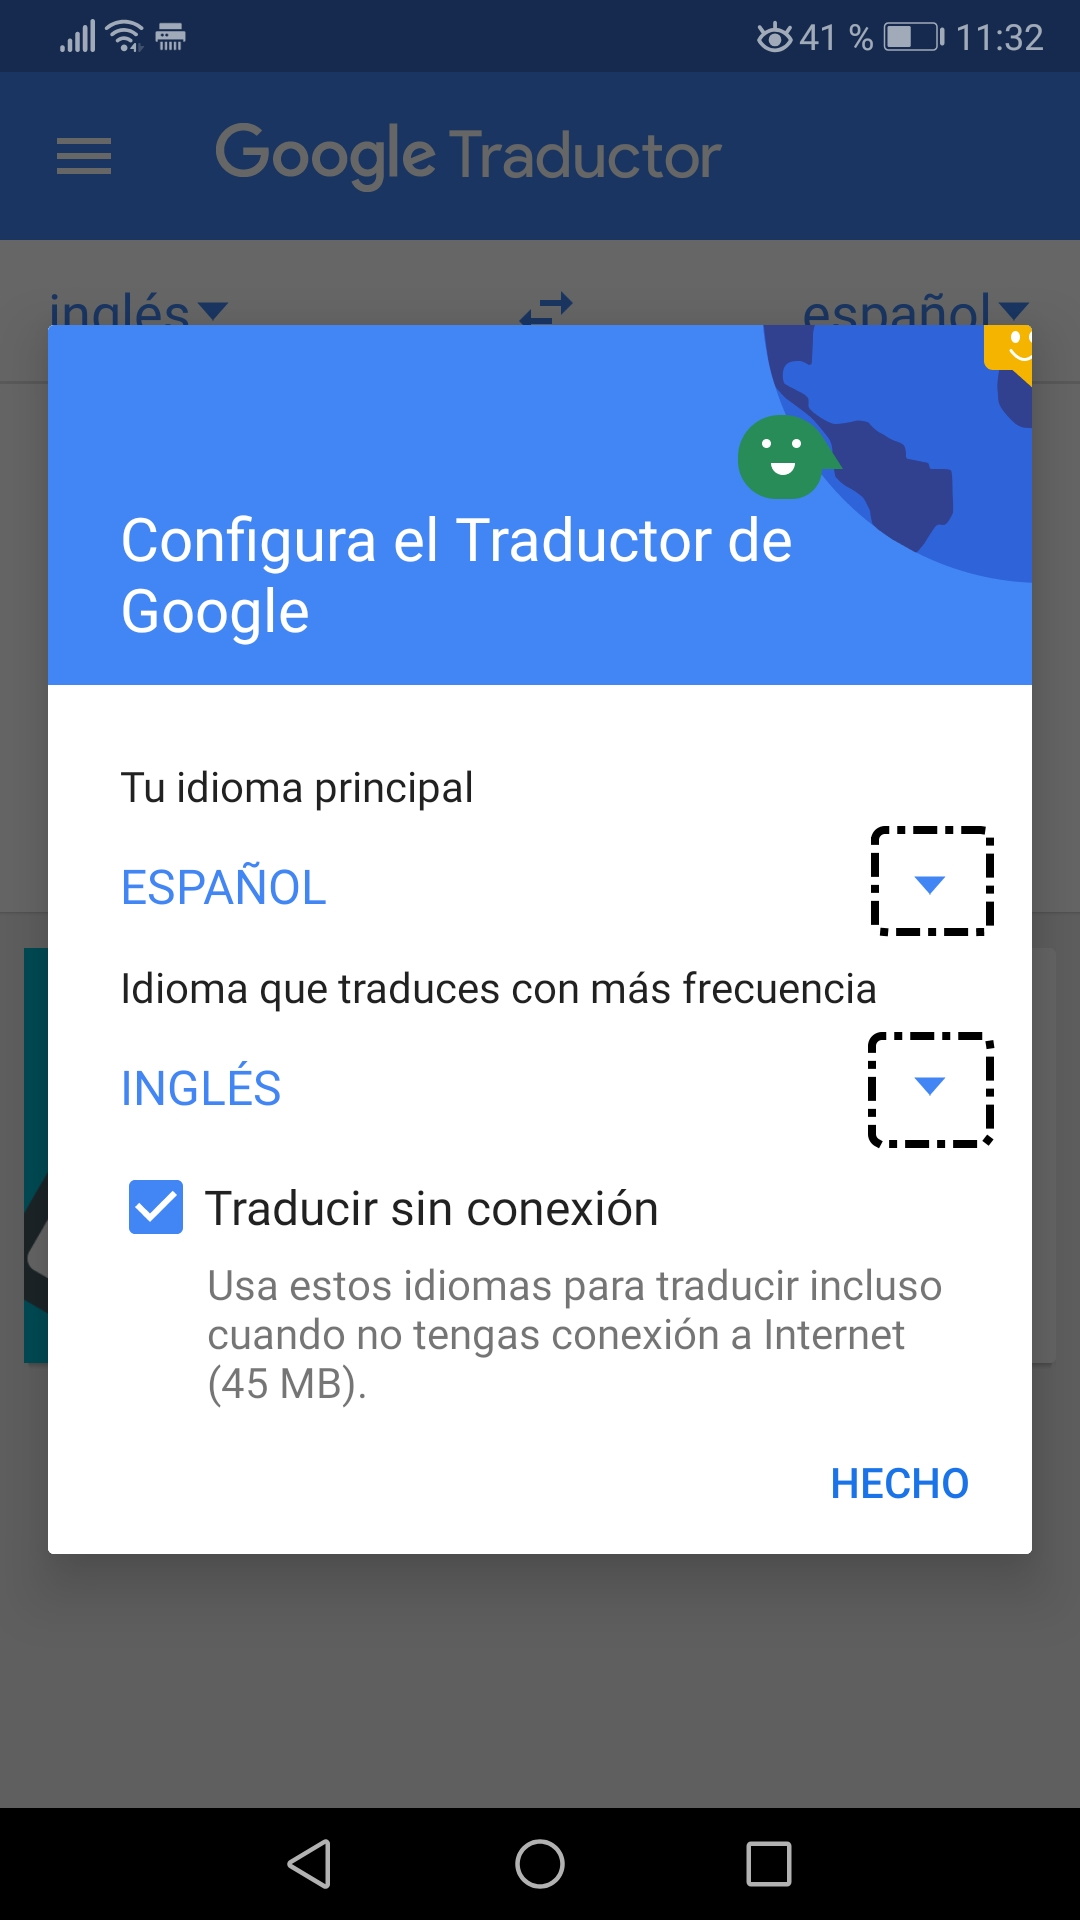 Configurar el Traductor de Google